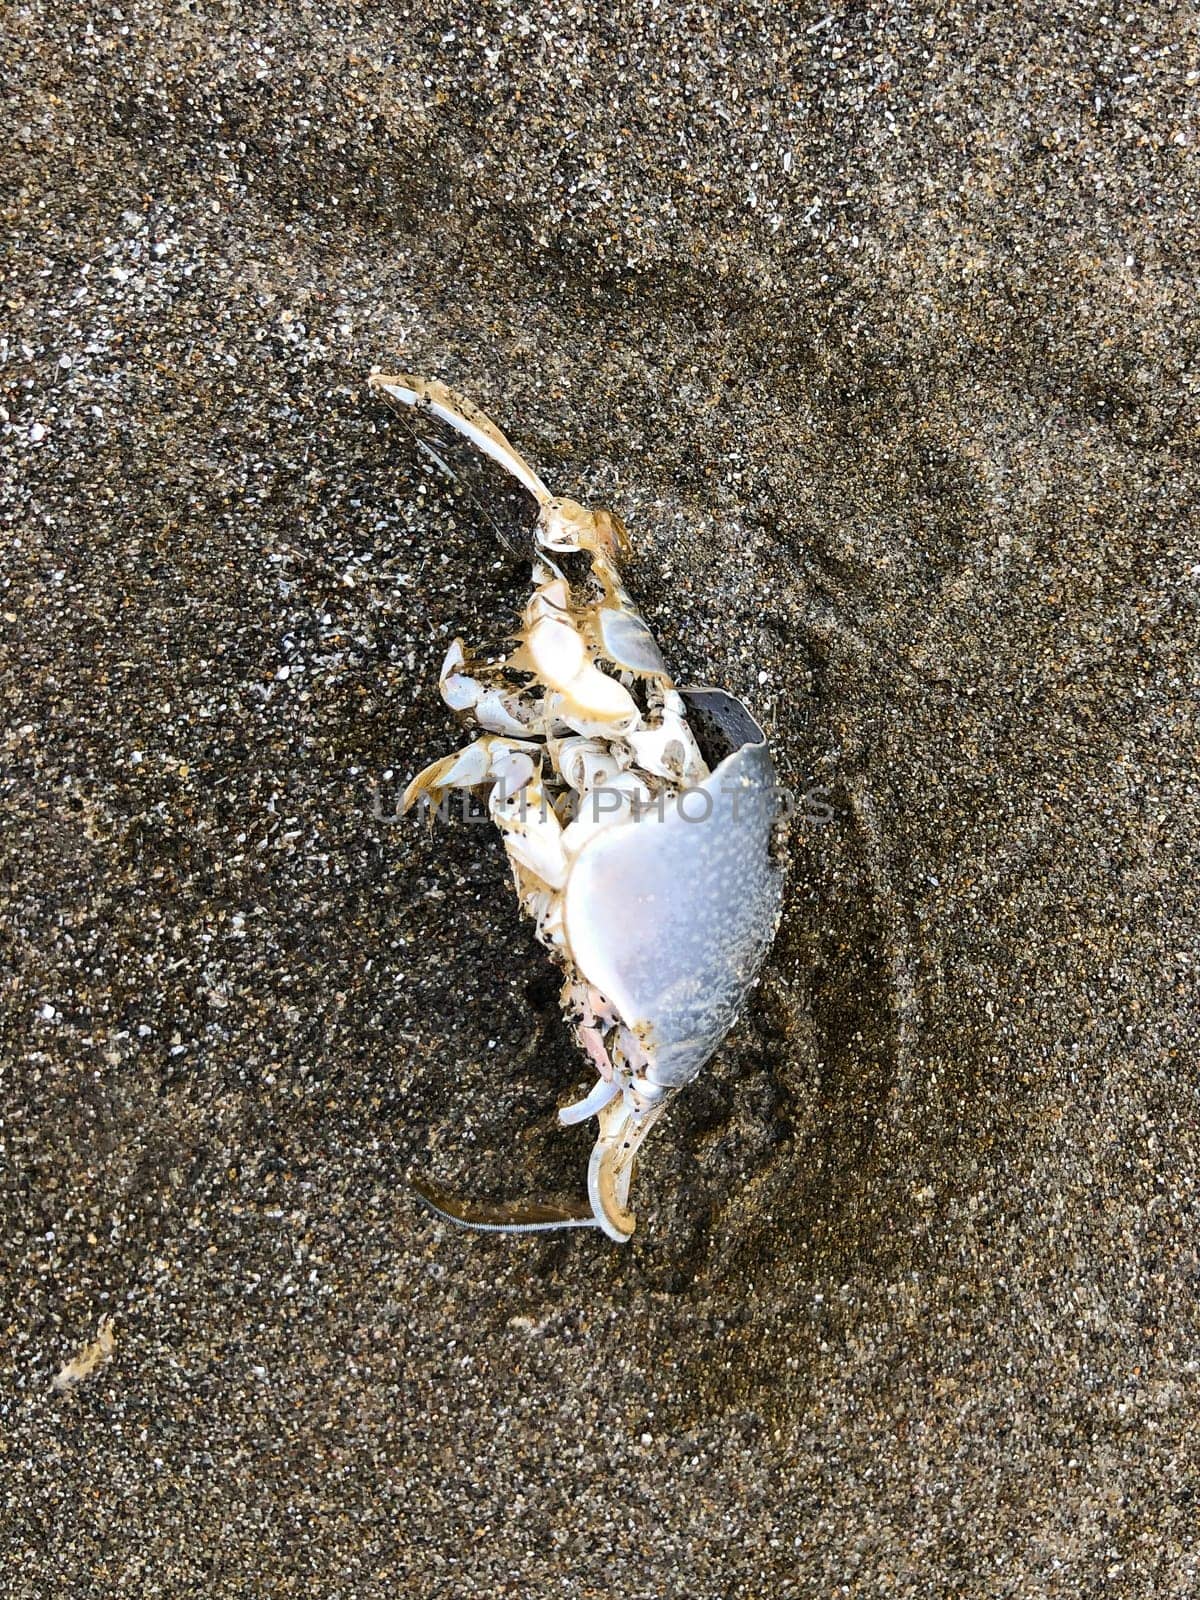 Dead mole crab on the beach near the waves along the Oregon Coast.